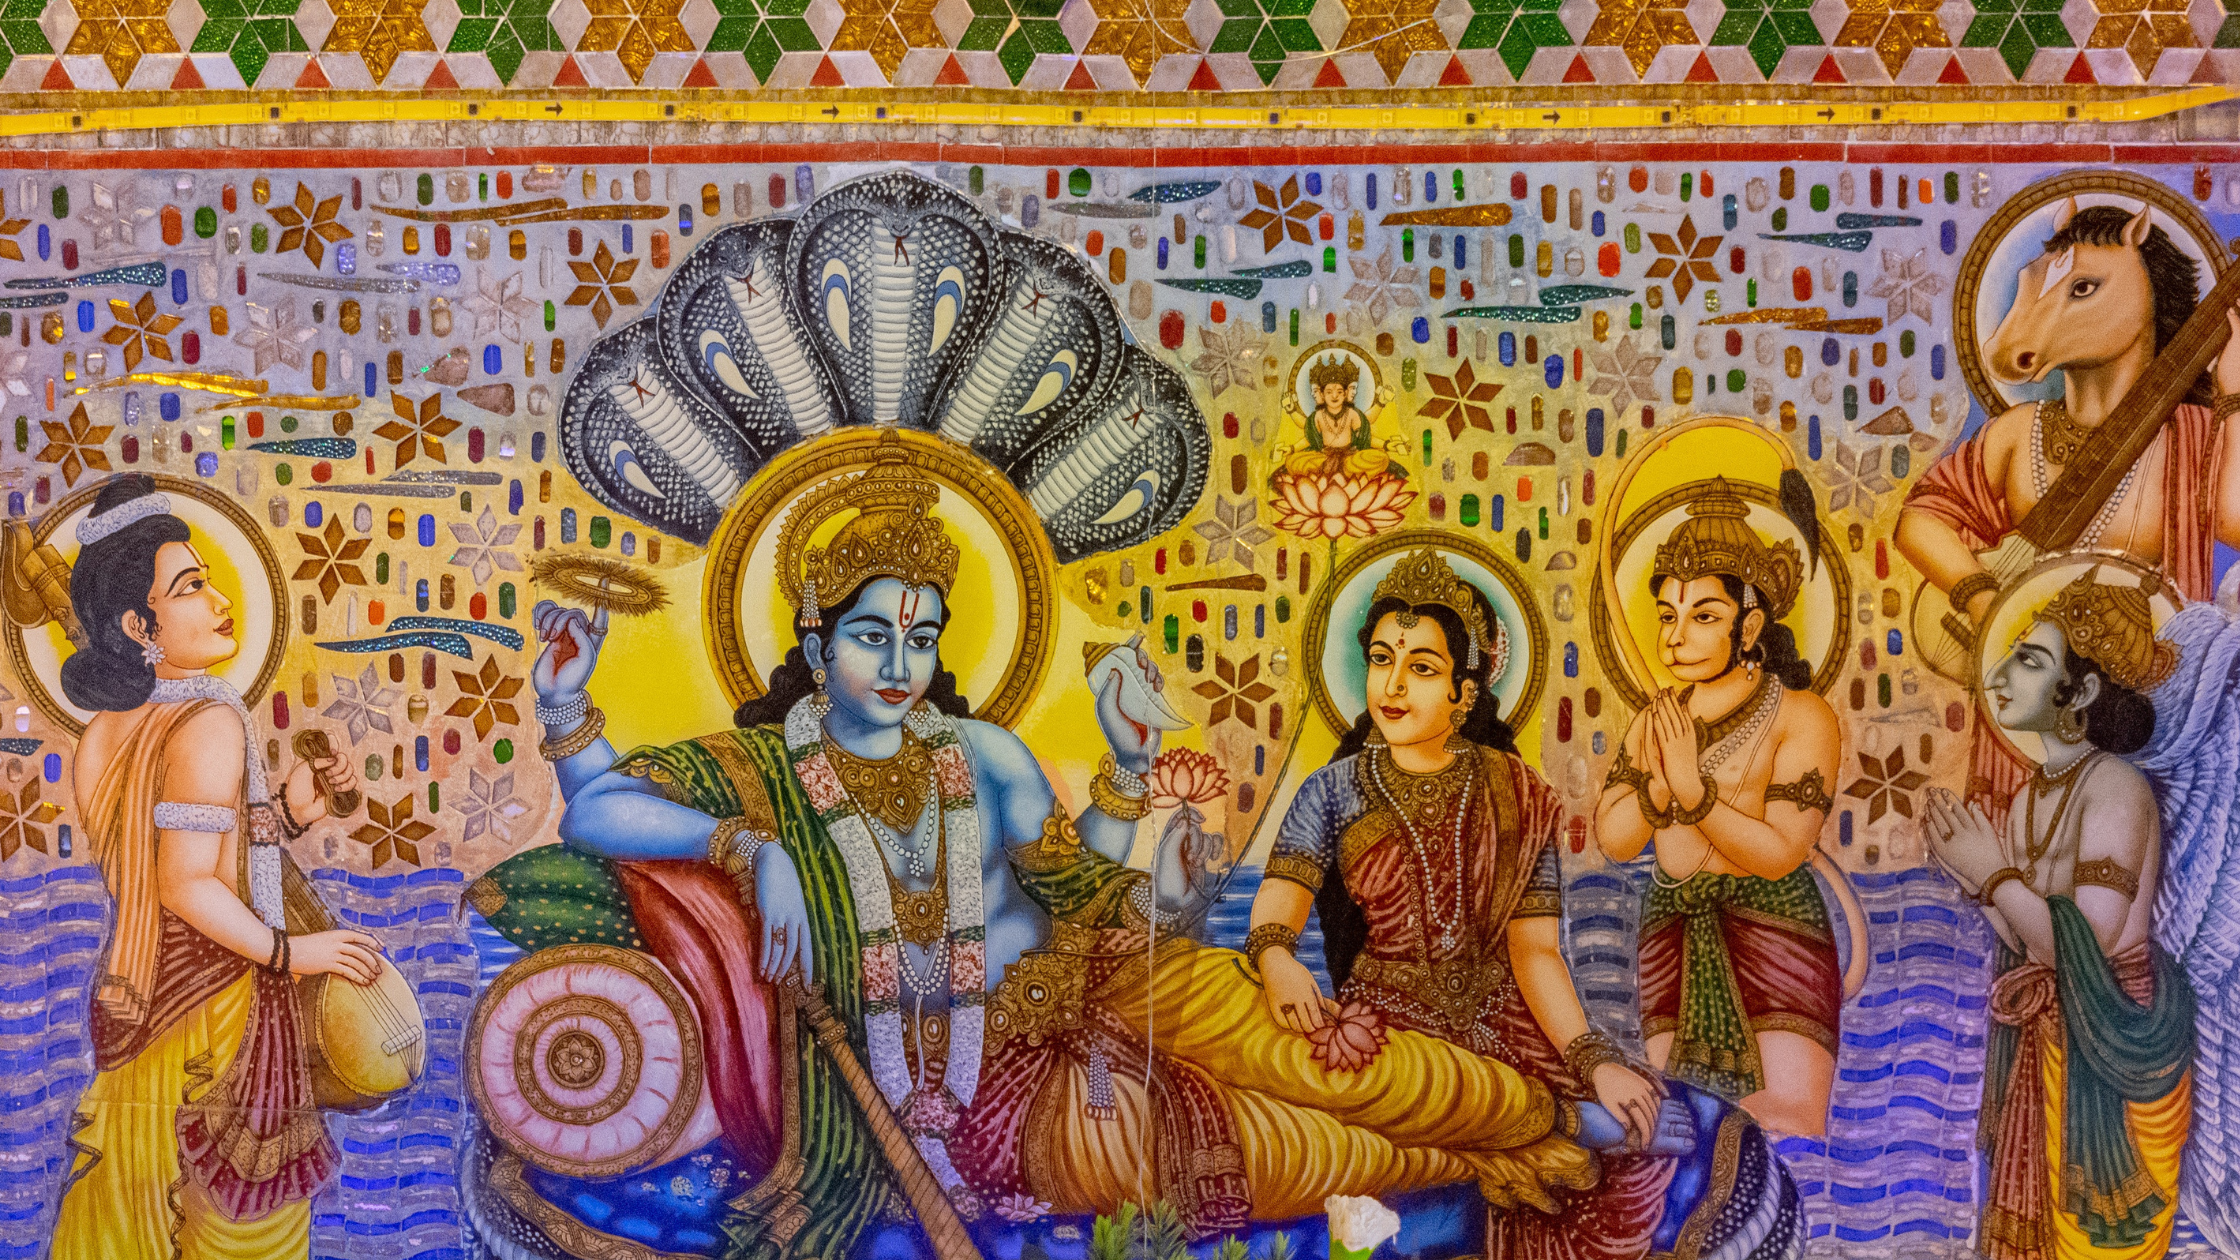 Origin of Lord Vishnu and His symbolism